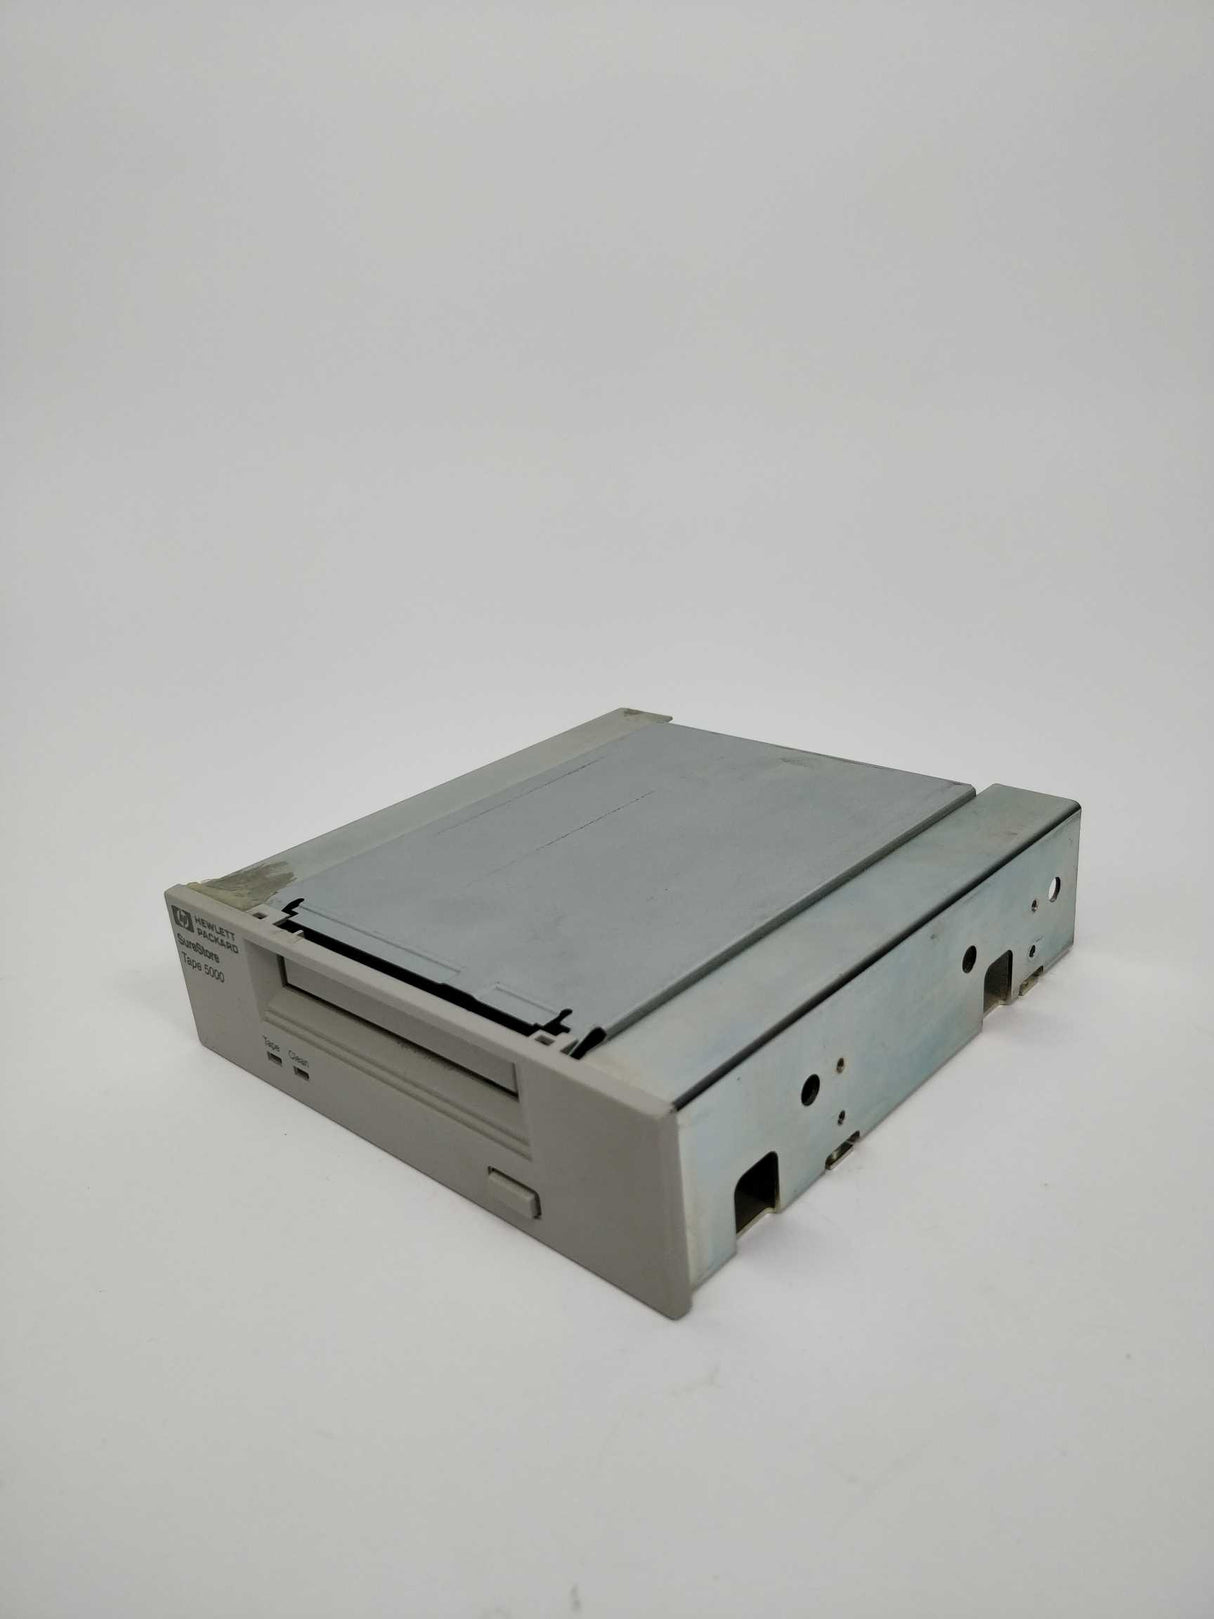 Hewlett Packard C1526G/H SureStore tape 5000